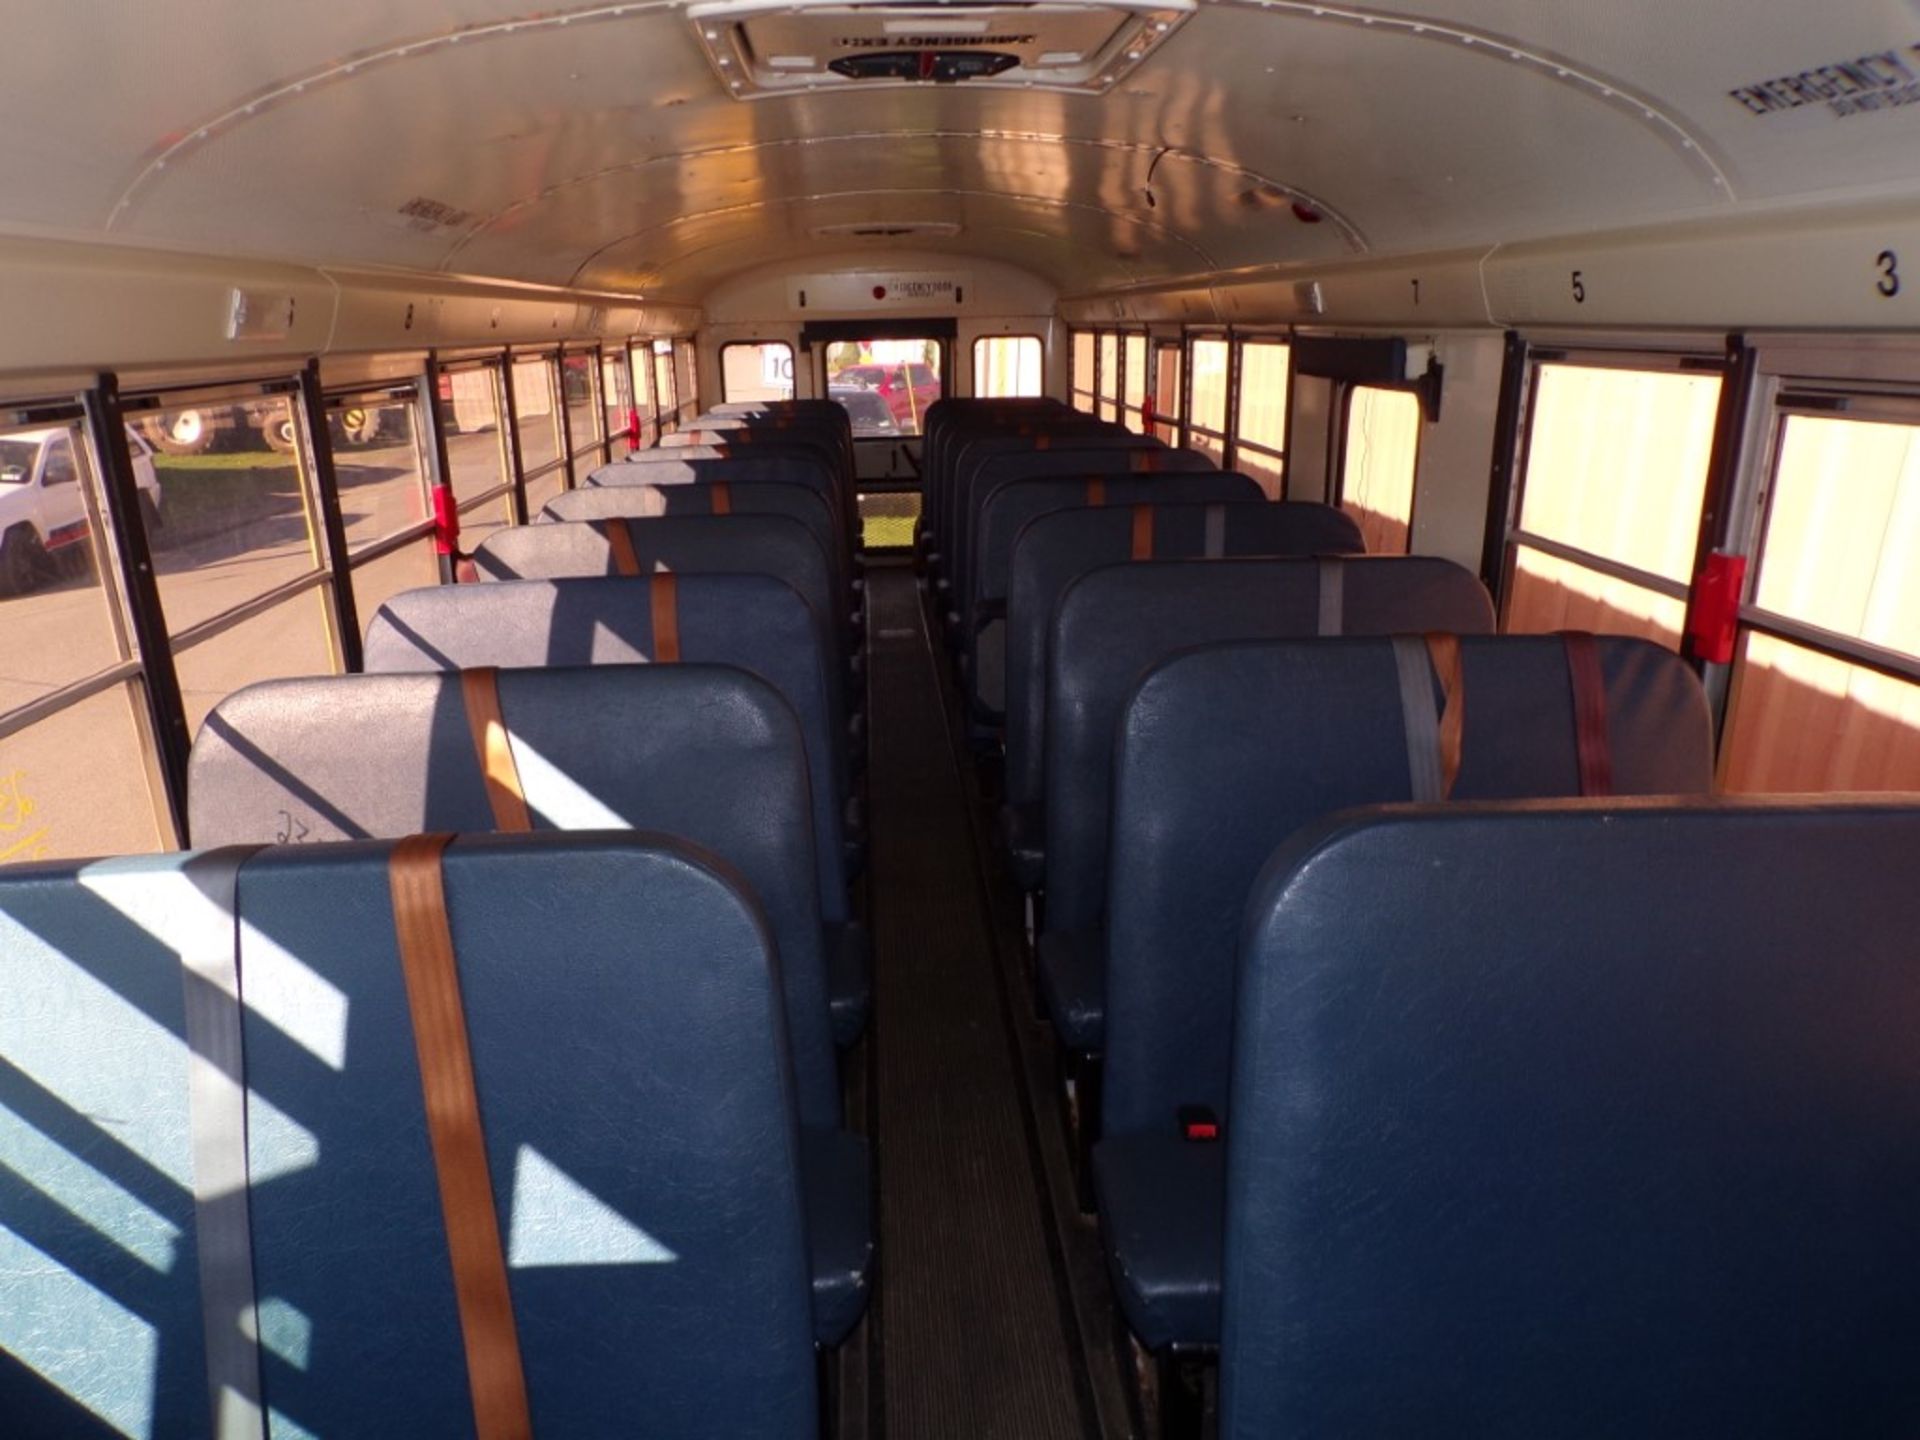 2014 International 66 Seat School Bus, Maxx Force Diesel, 165,315 Miles, # 265, Vin # - Bild 6 aus 7